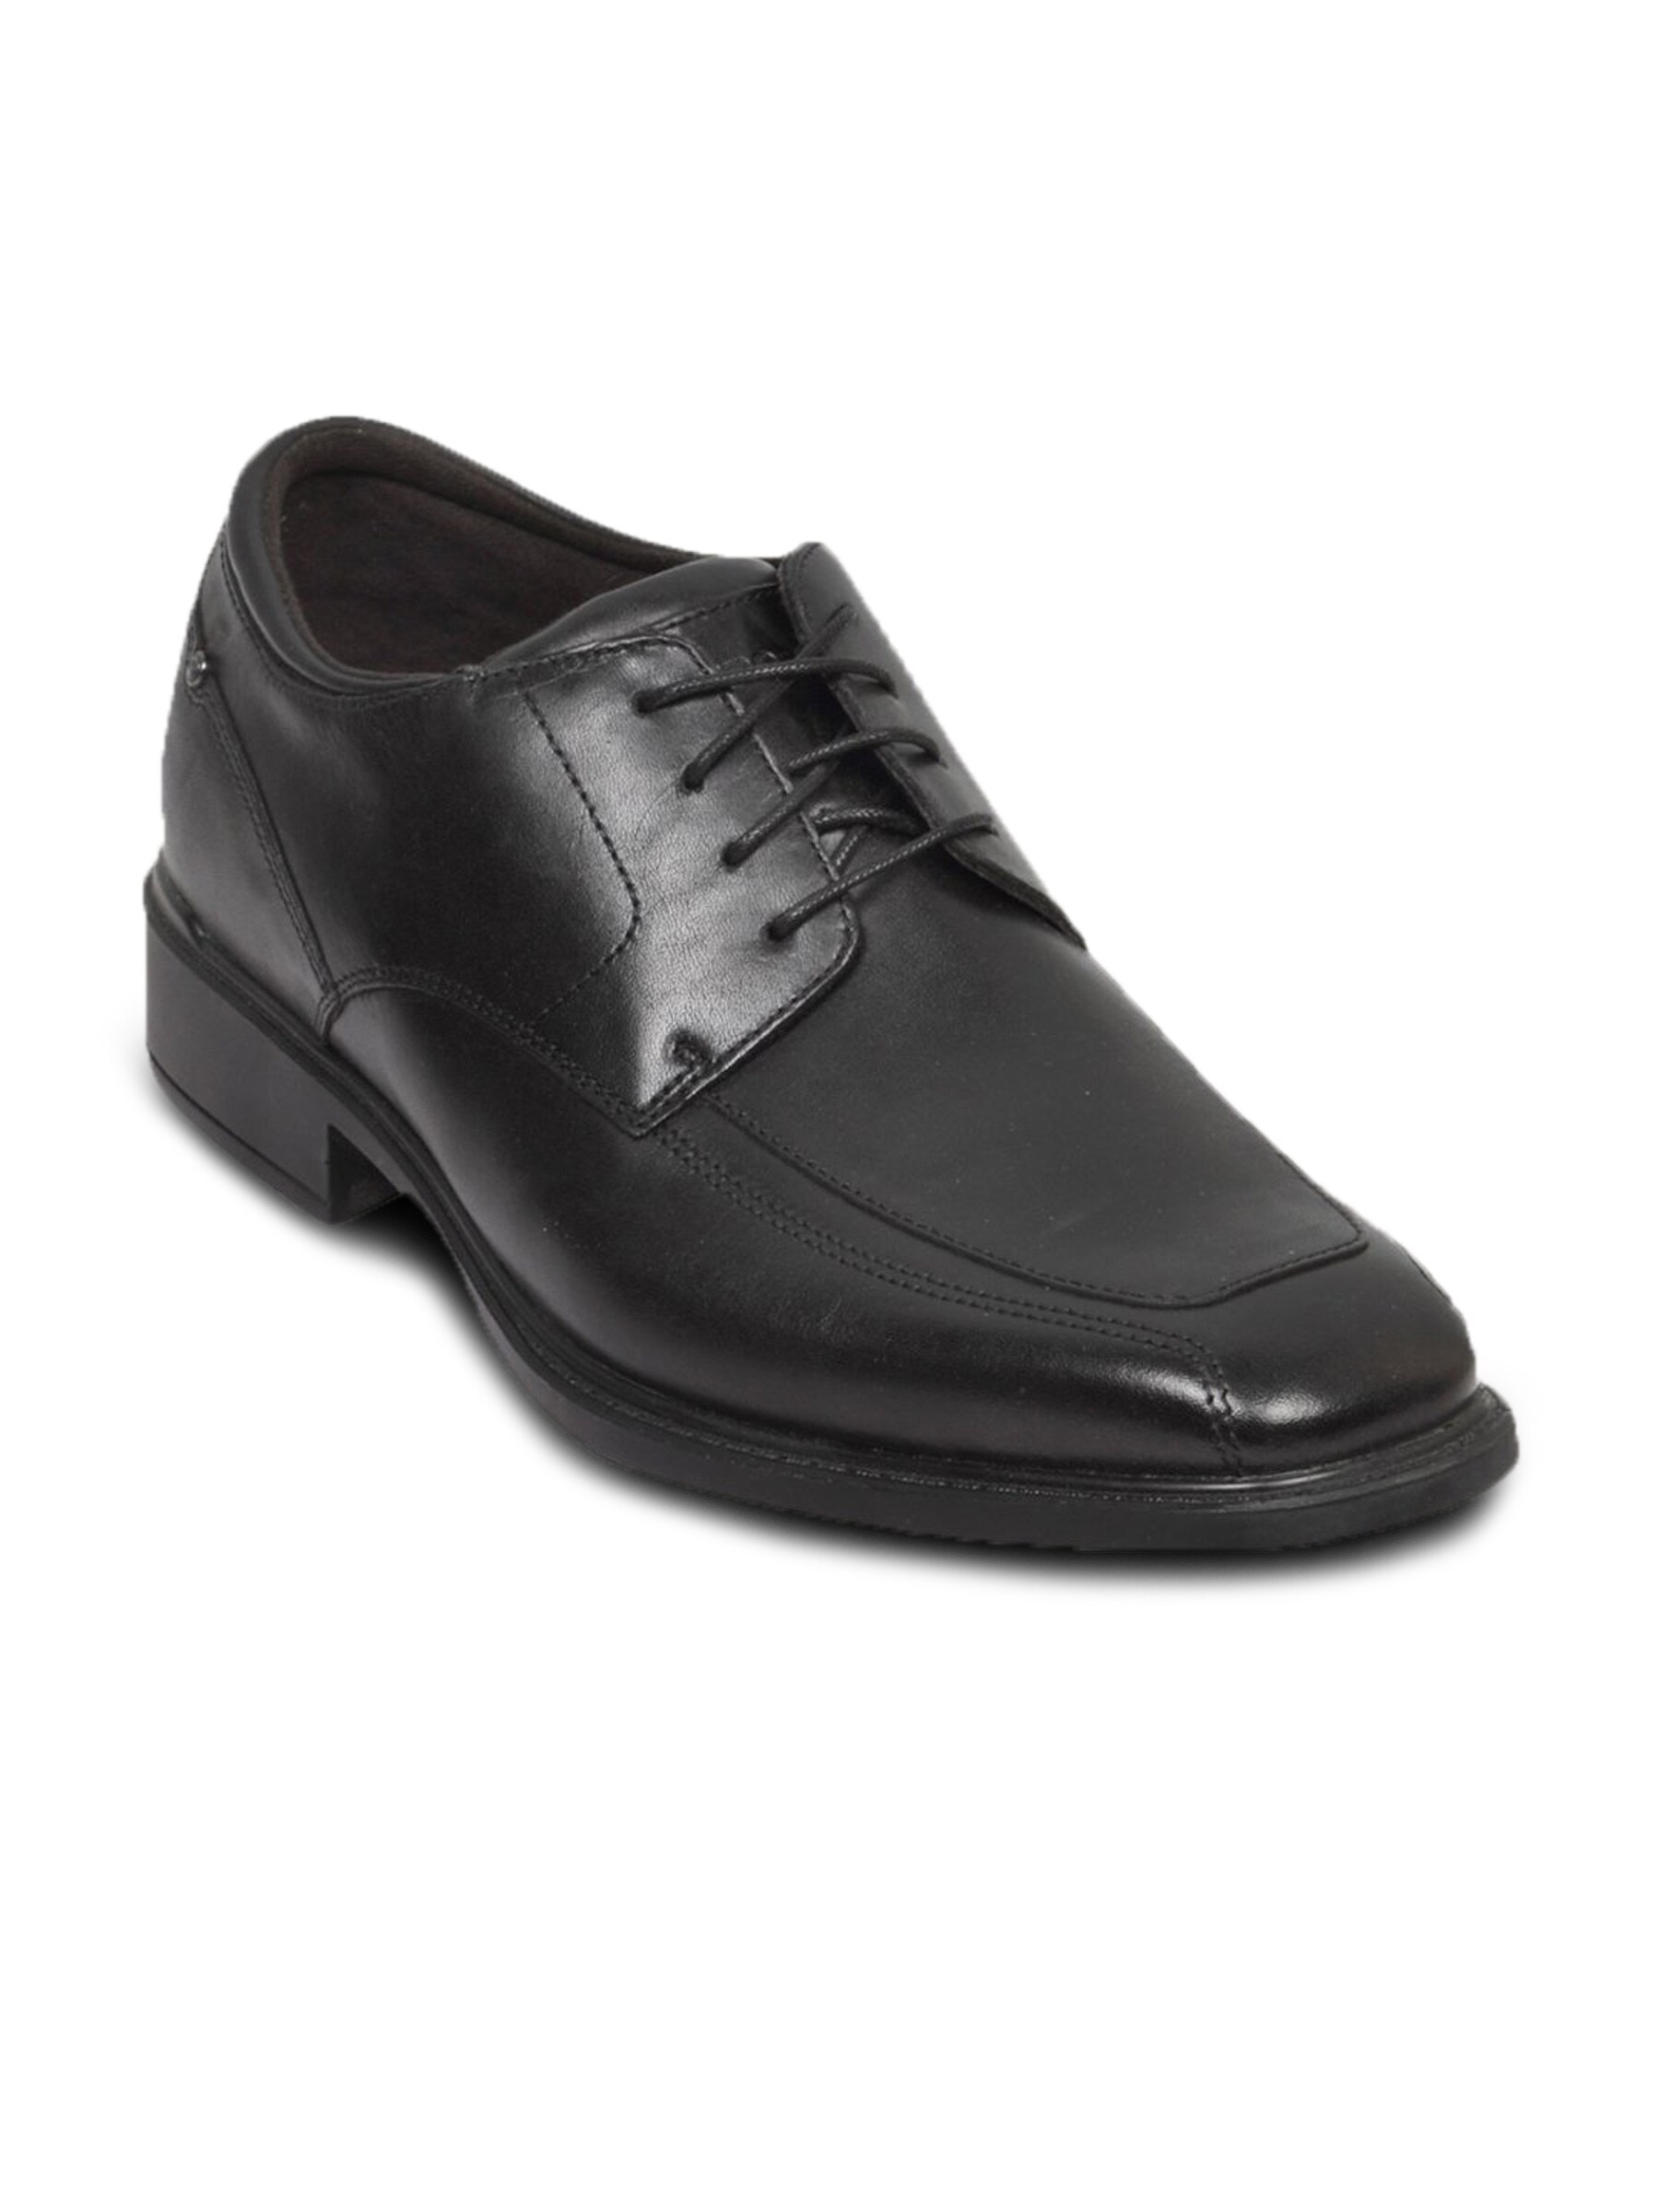 Rockport Men's Bvallee Black Shoe